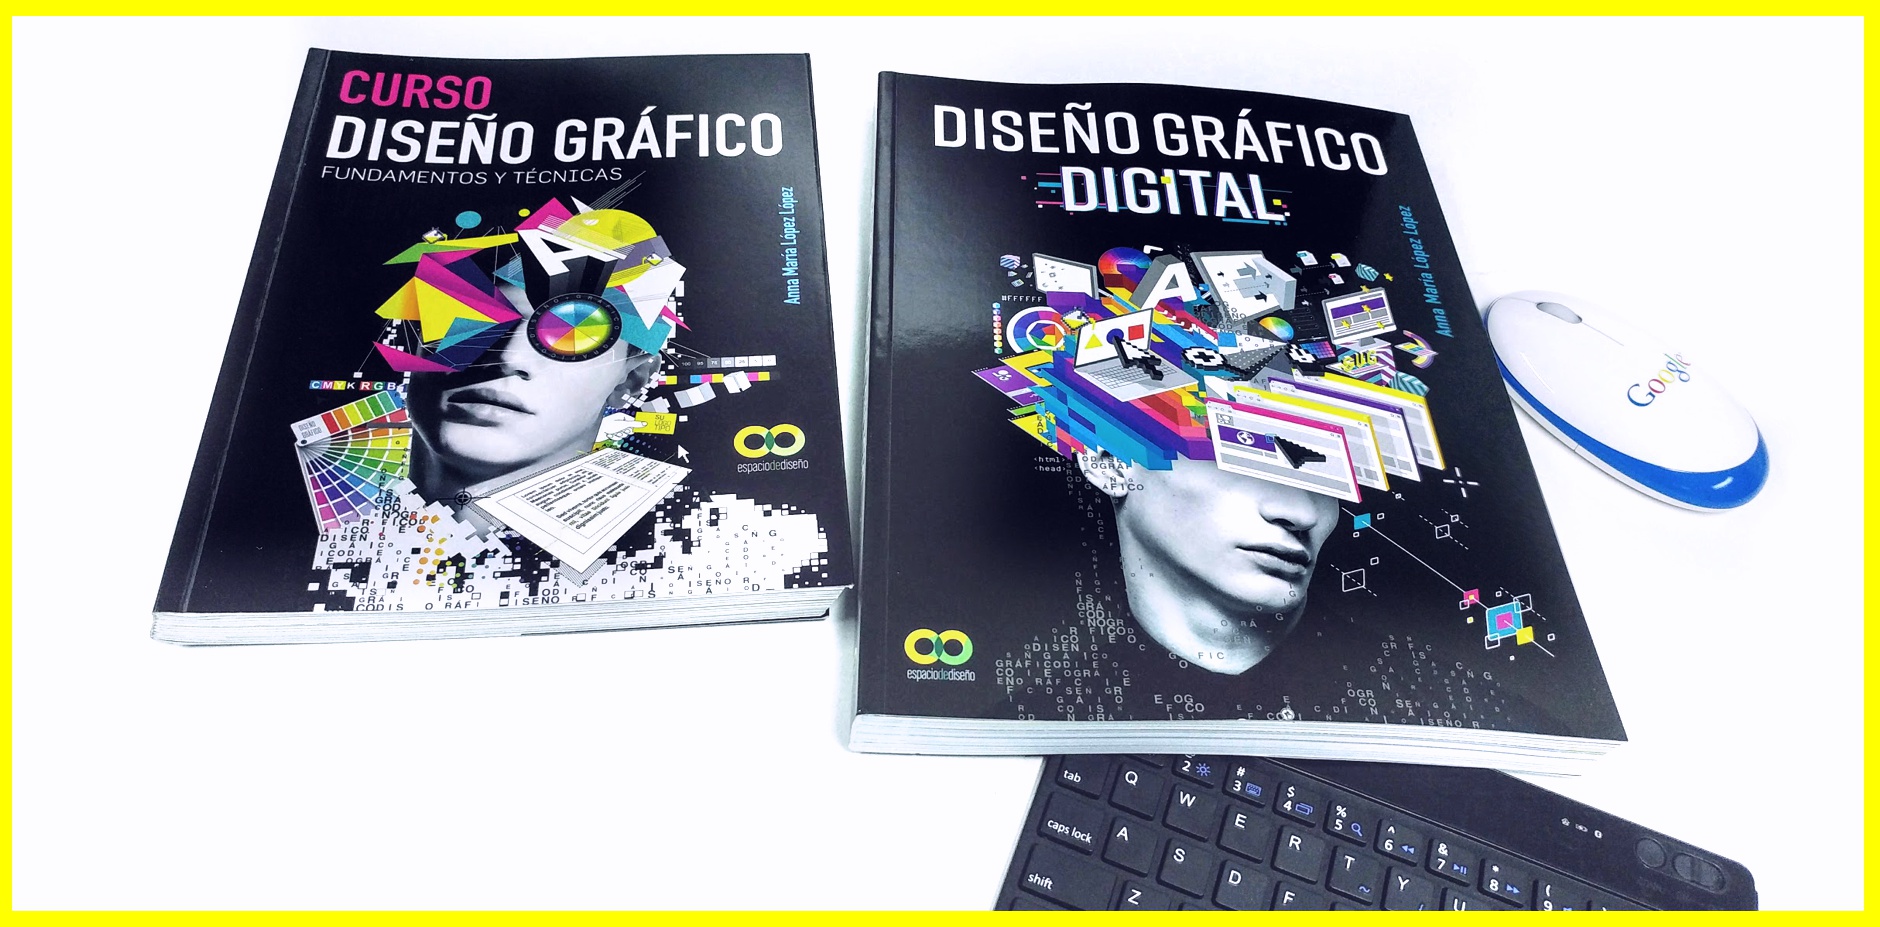 Los libros Curso Diseño Gráfico y Diseño Gráfico Digital